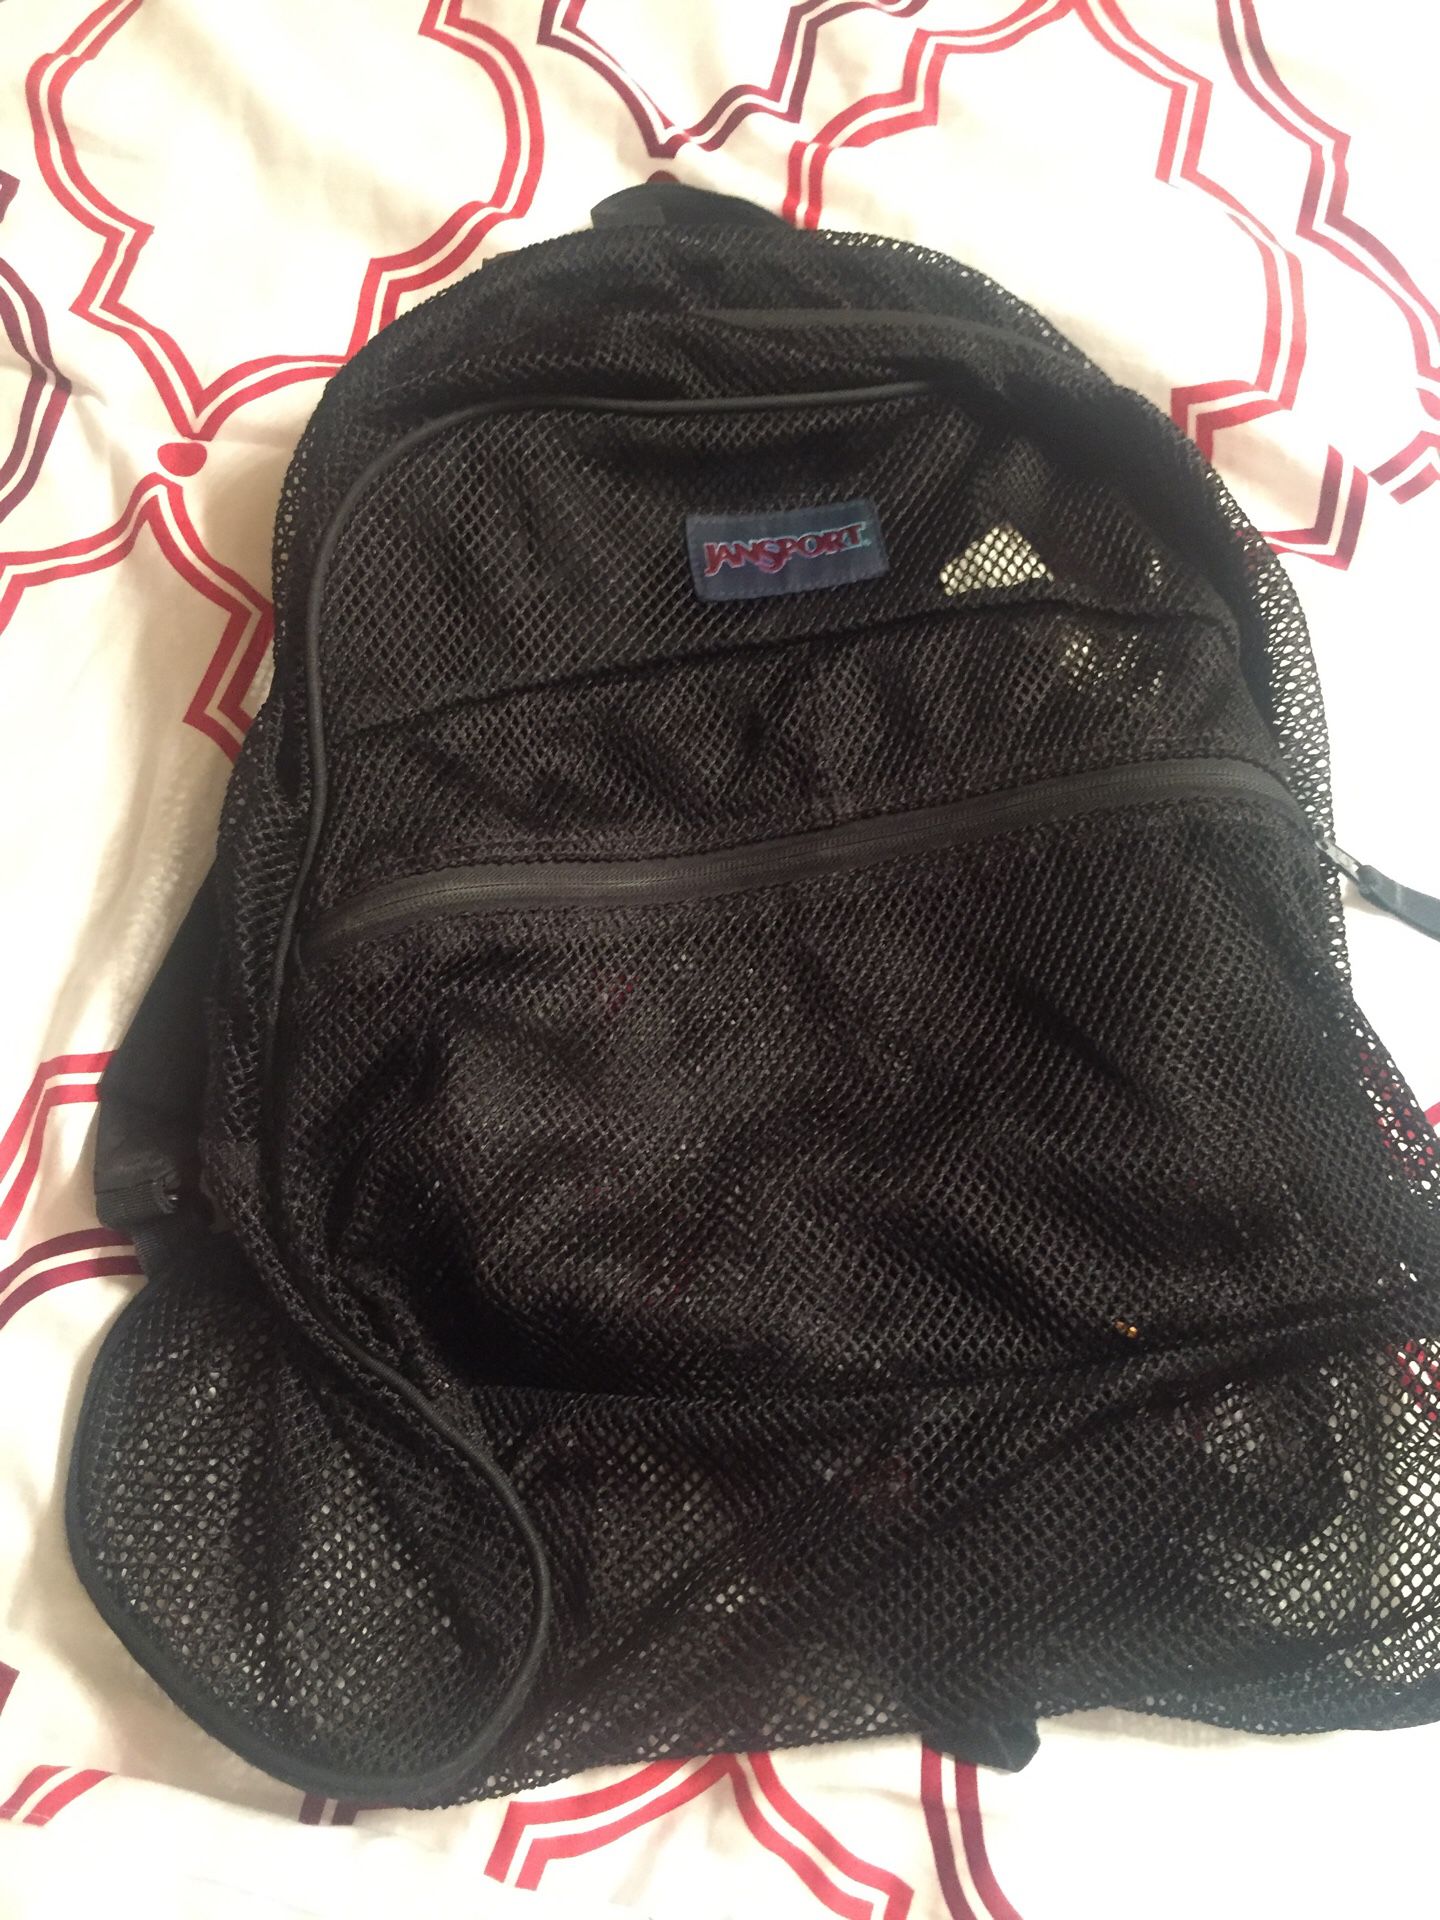 Jansport mesh backpack